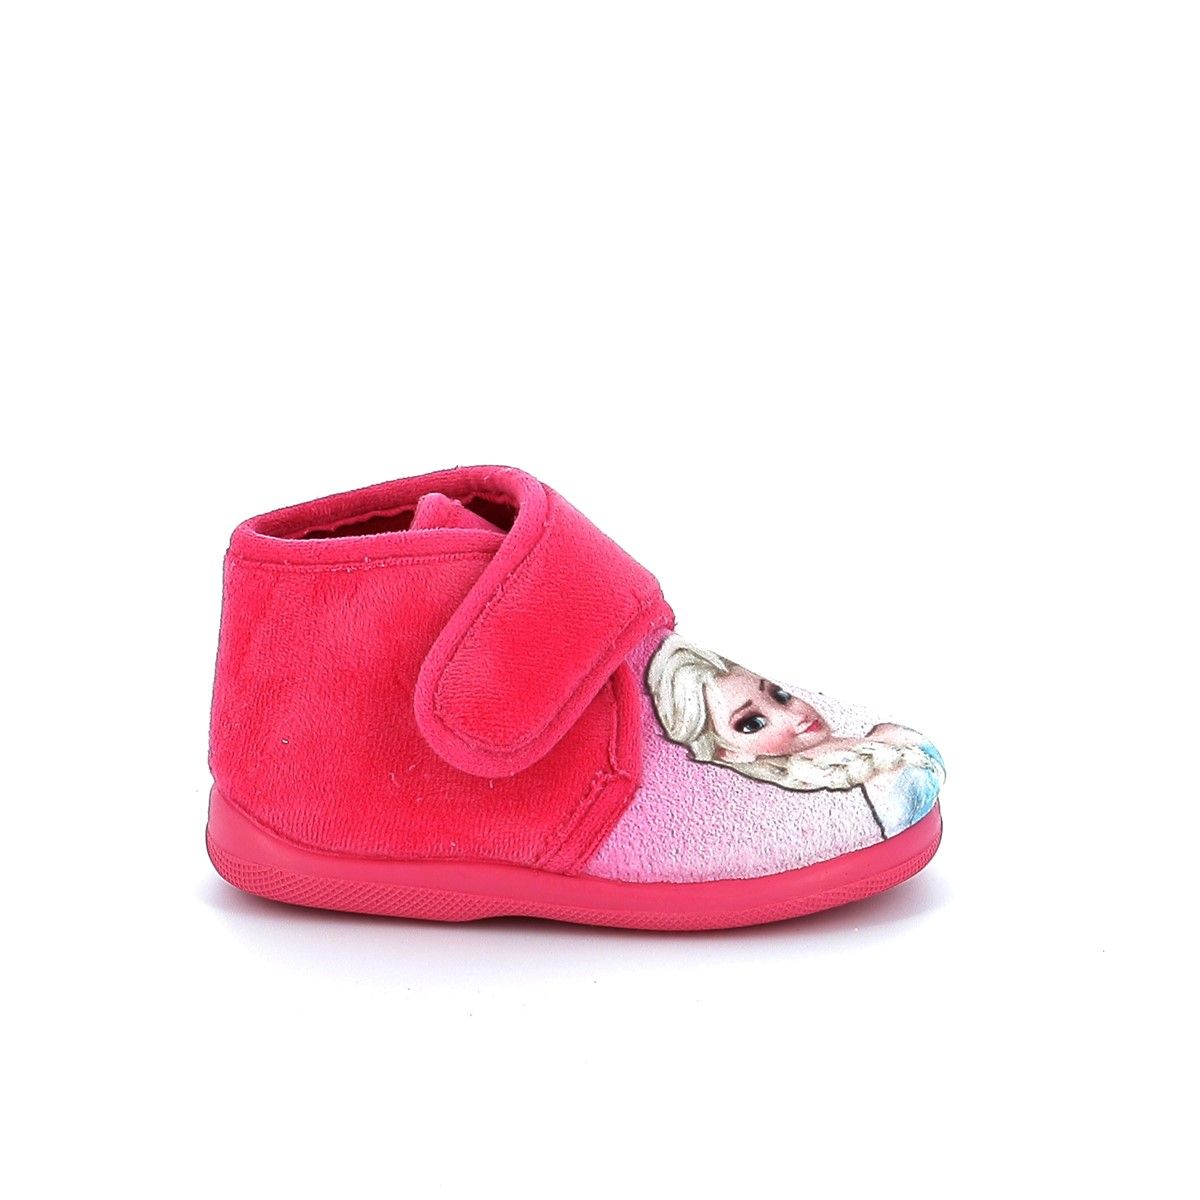 Παιδική Παντόφλα για Κορίτσι Ανατομική Meridian Χρώματος Ροζ 6207152